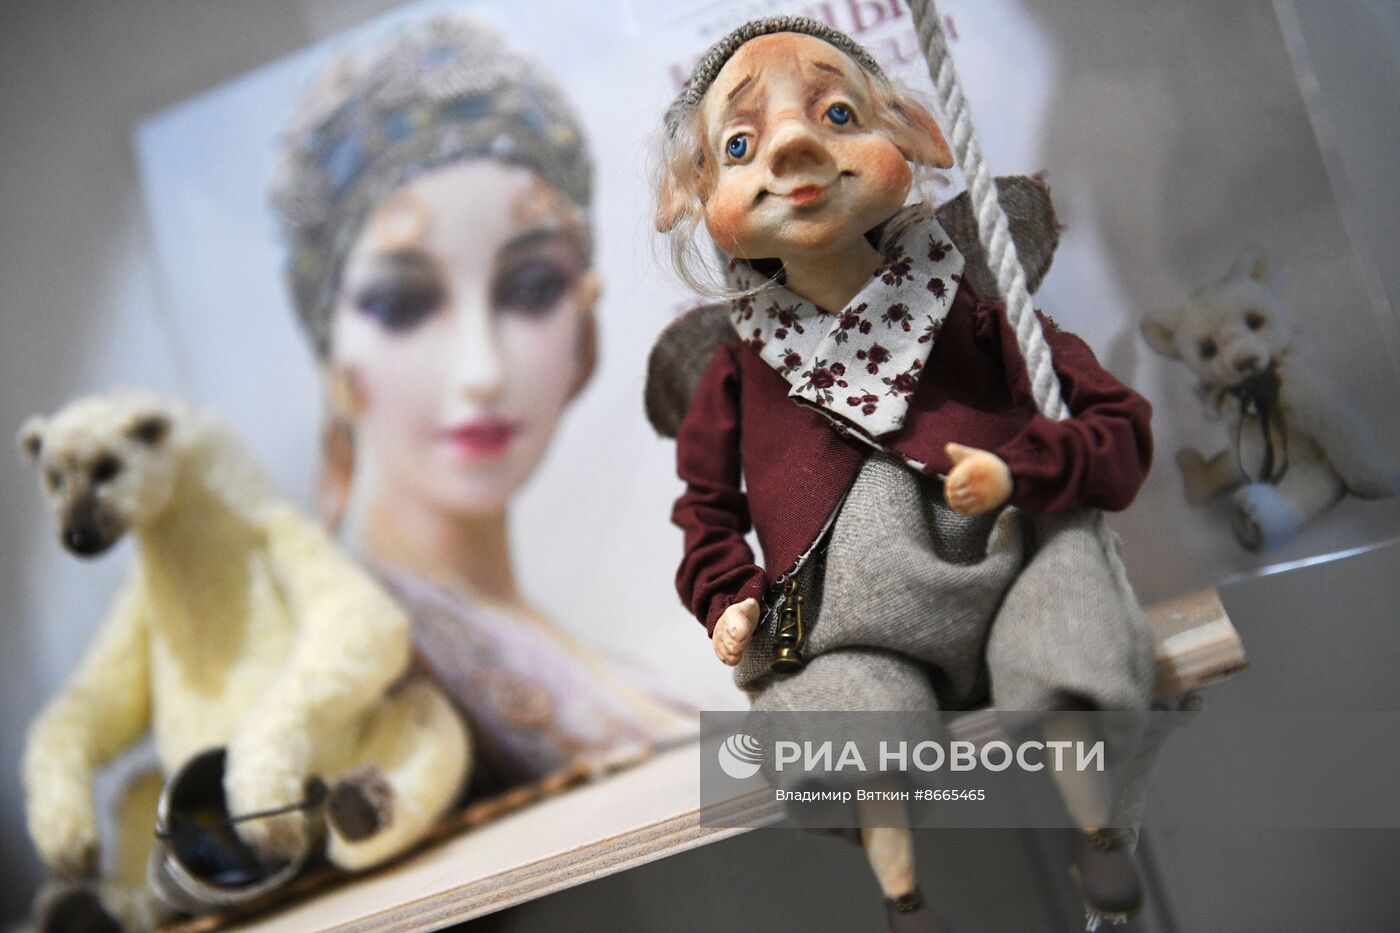 Выставка "Куклы и мишки Тедди"